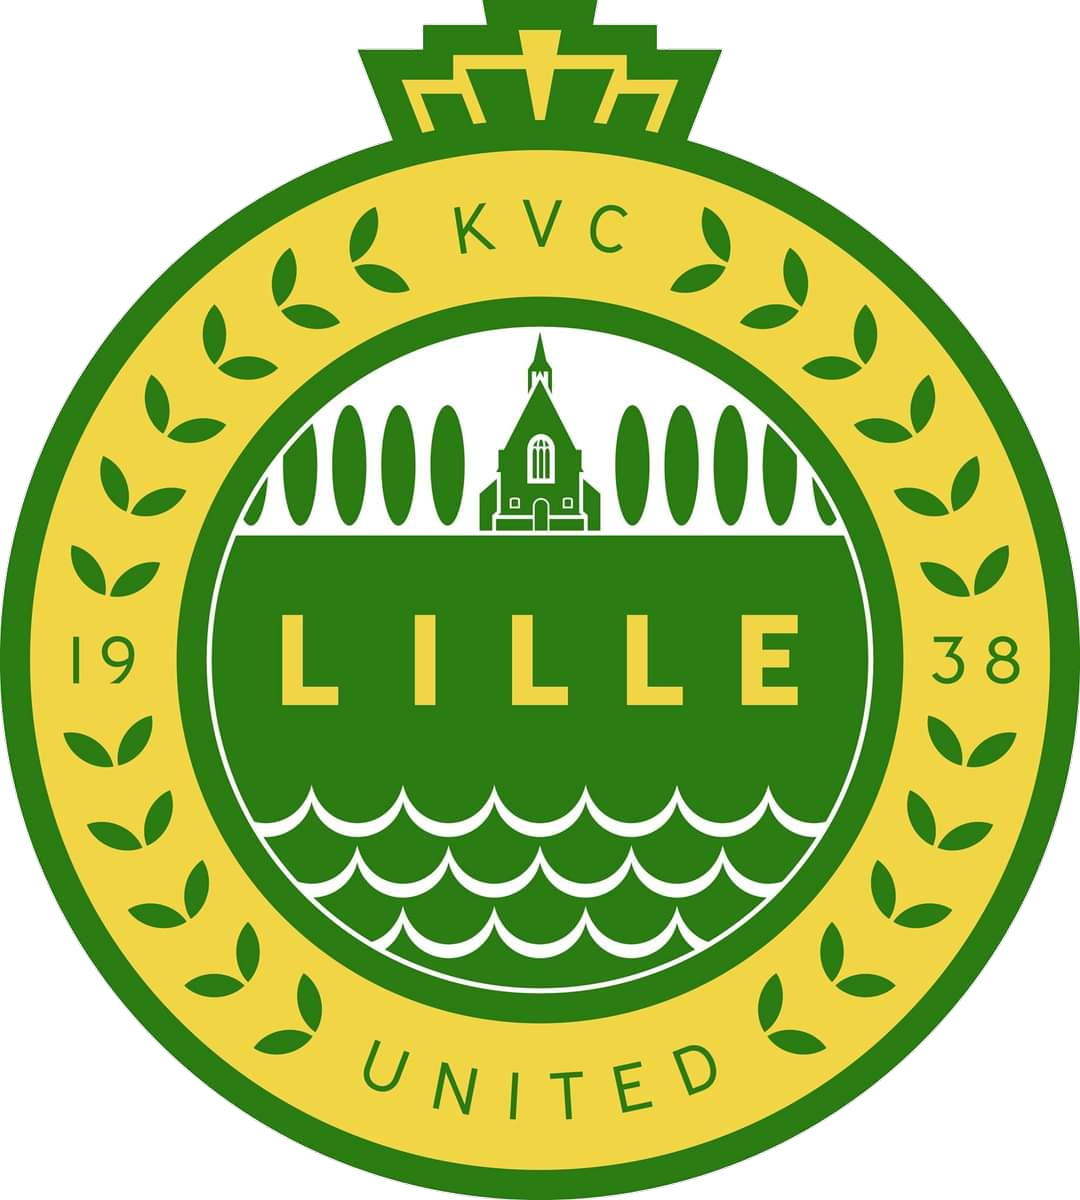 Wappen KVC Lille United diverse  93230